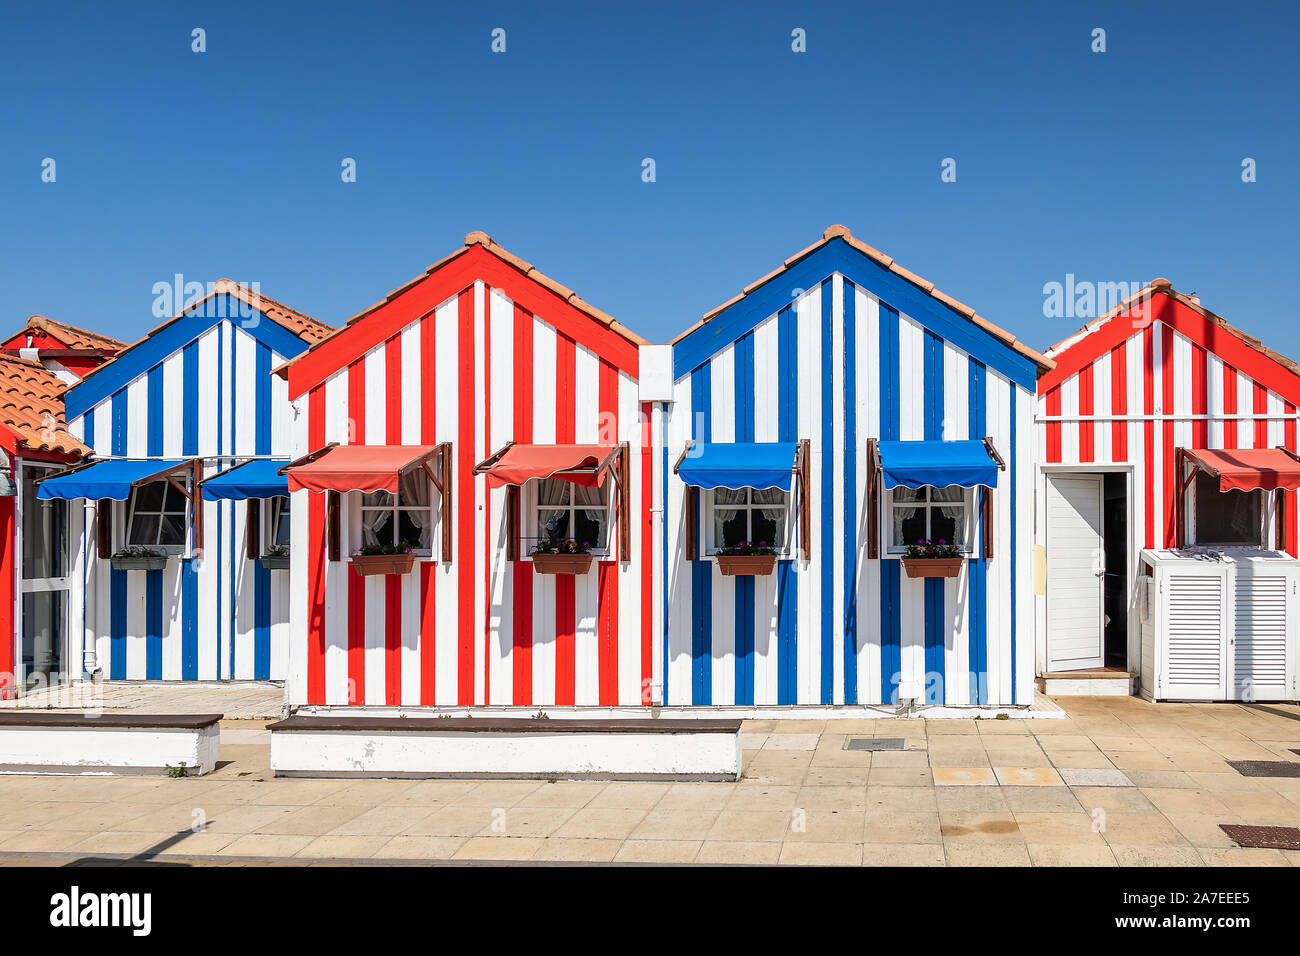 Maisons colorées à Costa Nova, Aveiro, Portugal. Rue avec maisons à rayures, Costa Nova, Aveiro, Portugal. Façades de maisons colorées à Costa Nova, une Banque D'Images